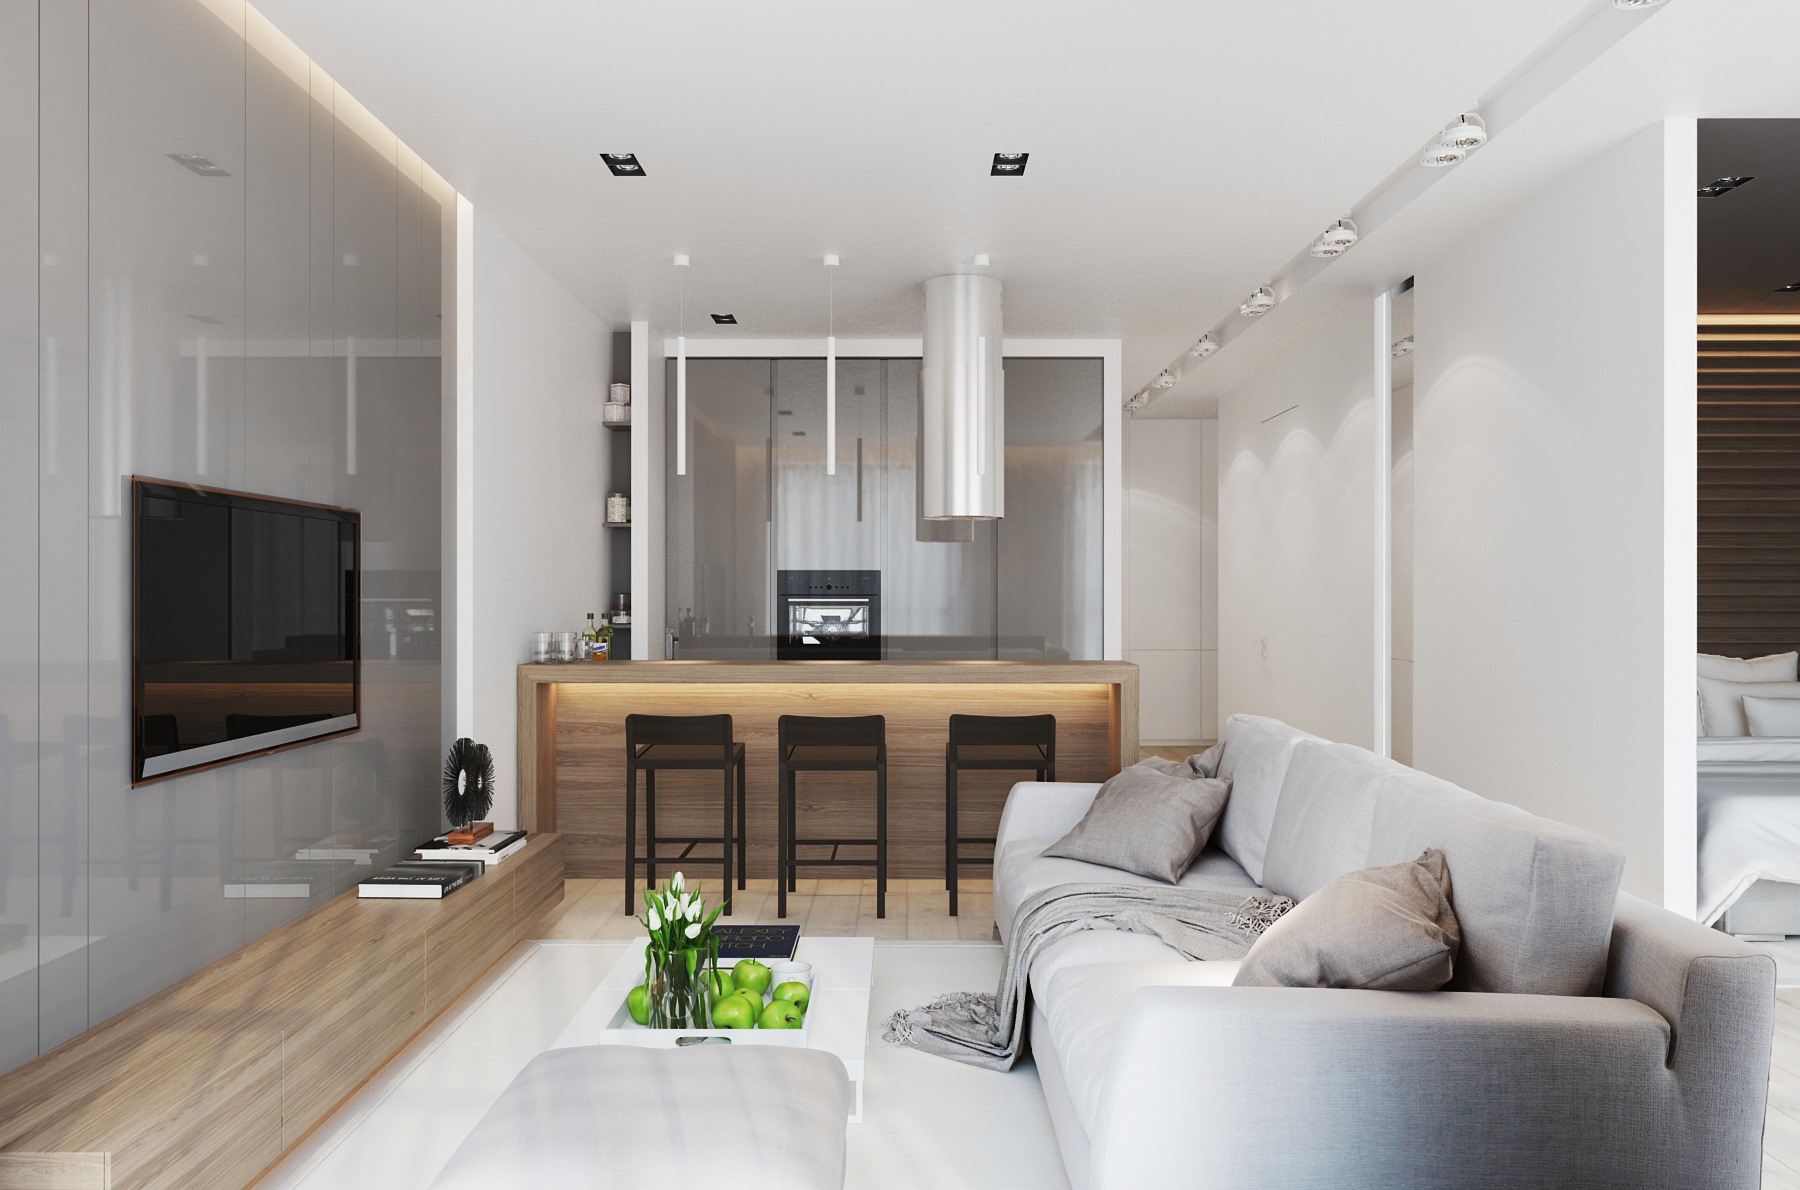 Дизайн квартиры 40 кв м в современном стиле: планировка интерьера и ремонта, фото